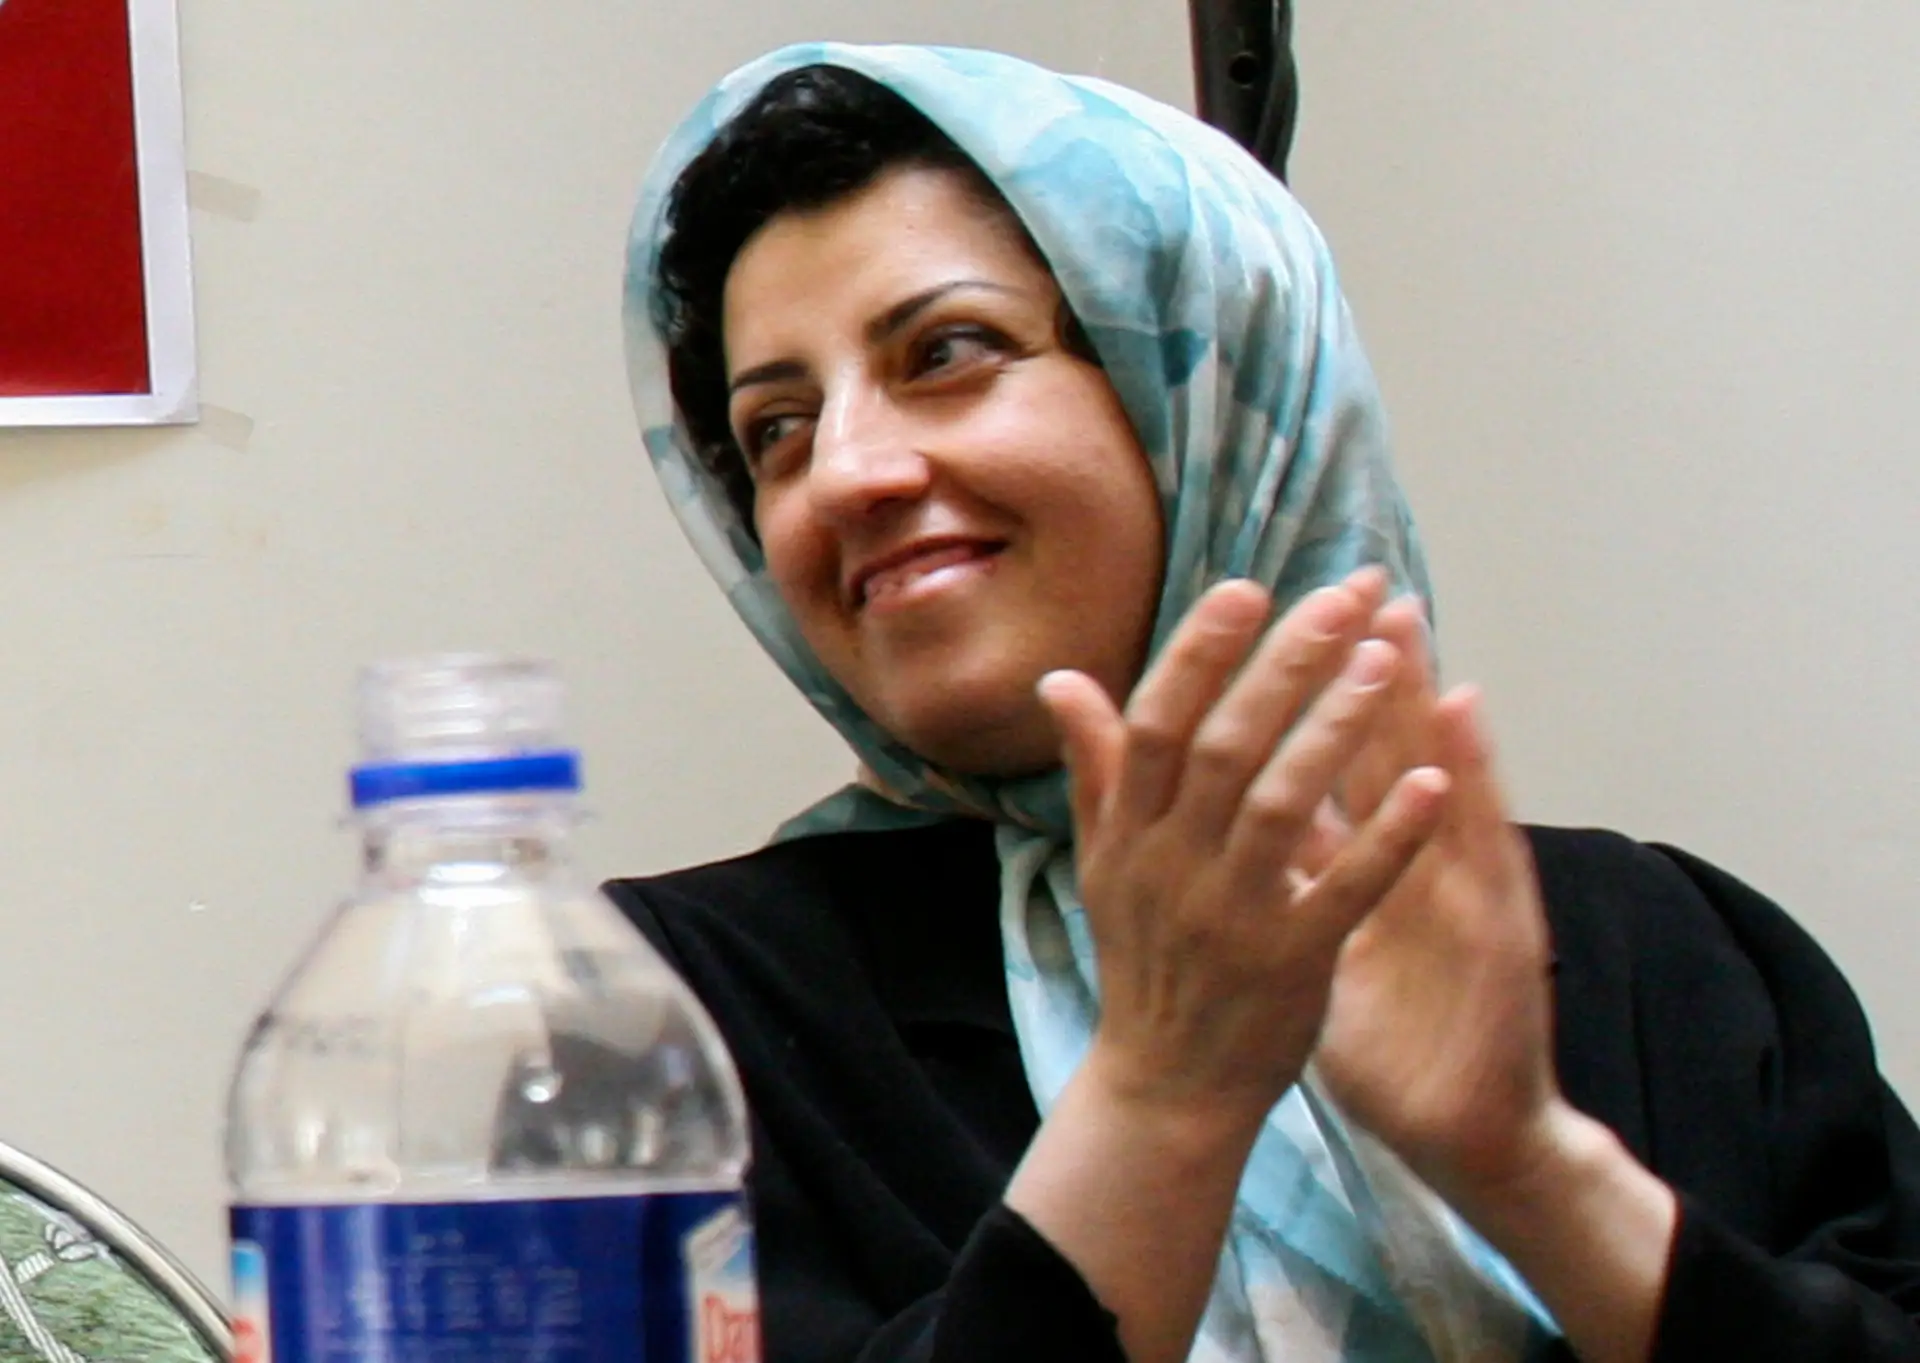 A ativista iraniana Narges Mohammadi foi anunciada como vencedora do P